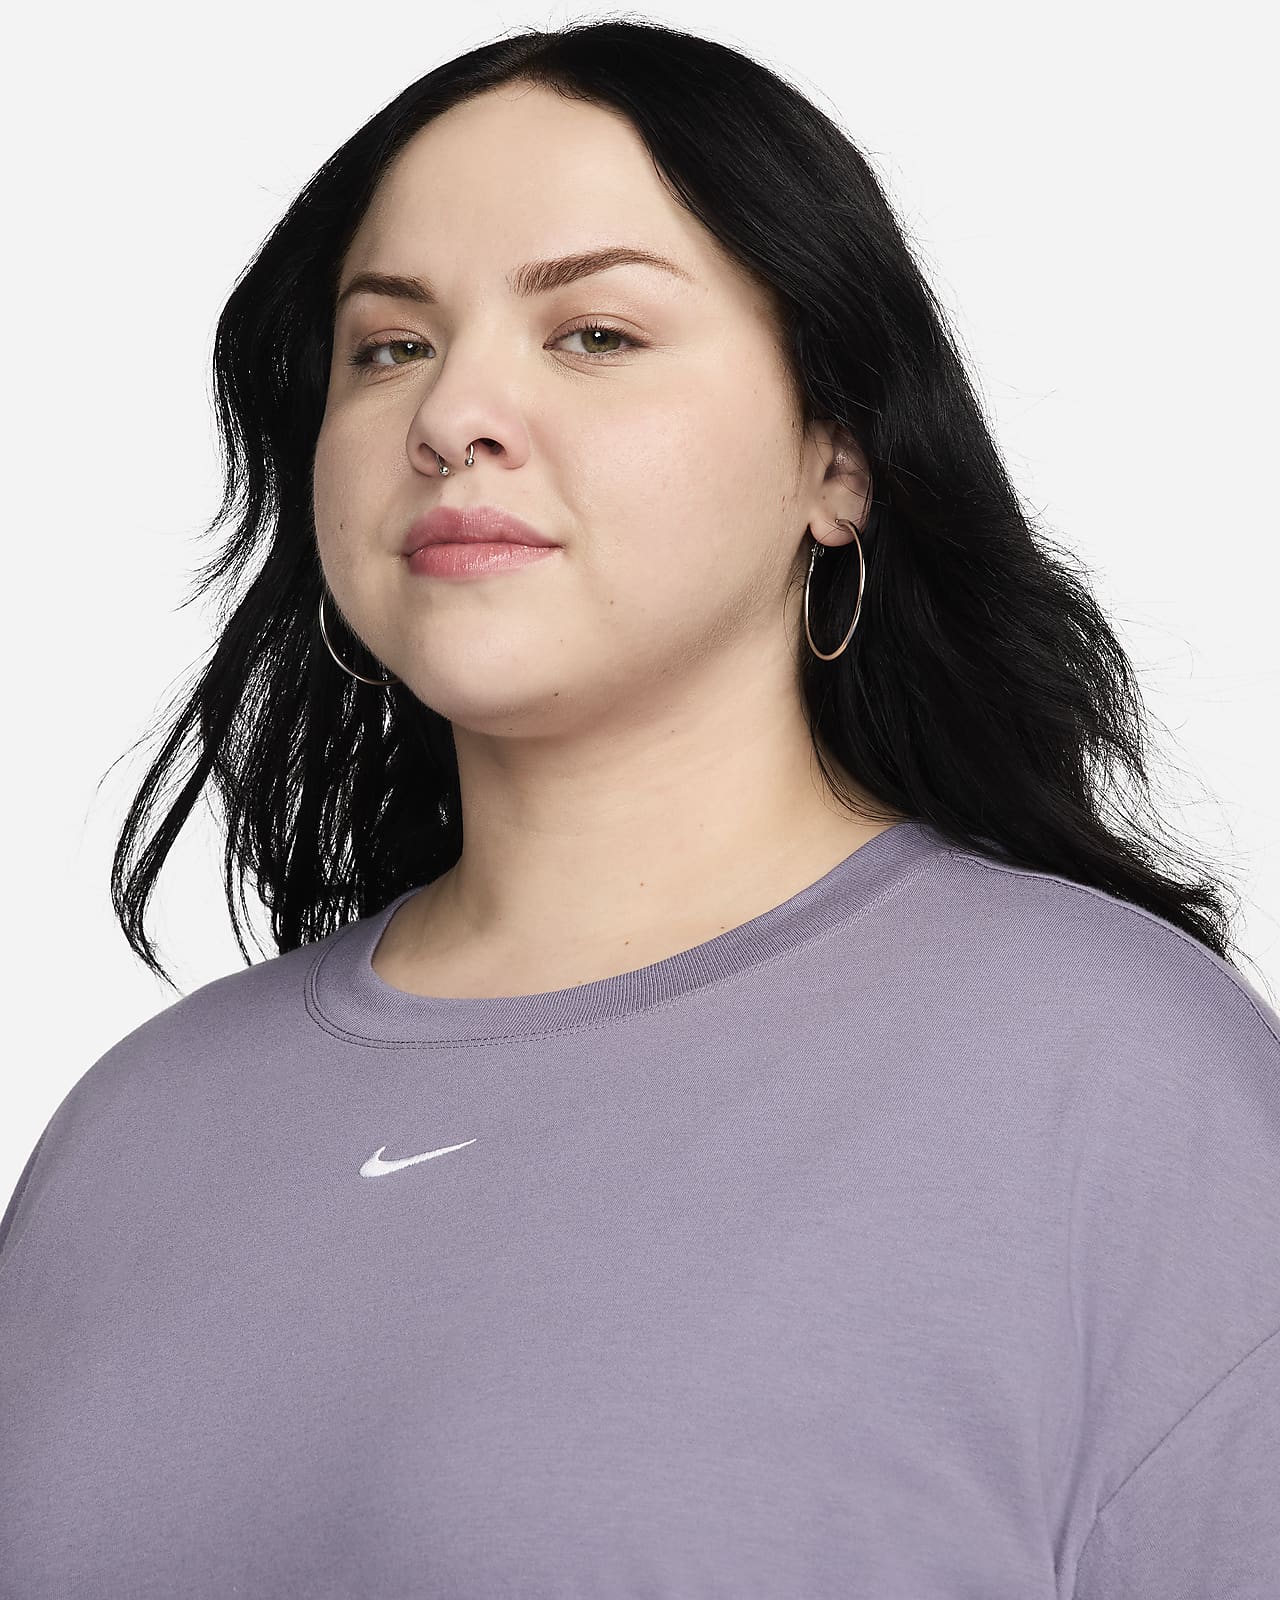 Nike Sportswear Essential Women's T-Shirt (Plus Size).